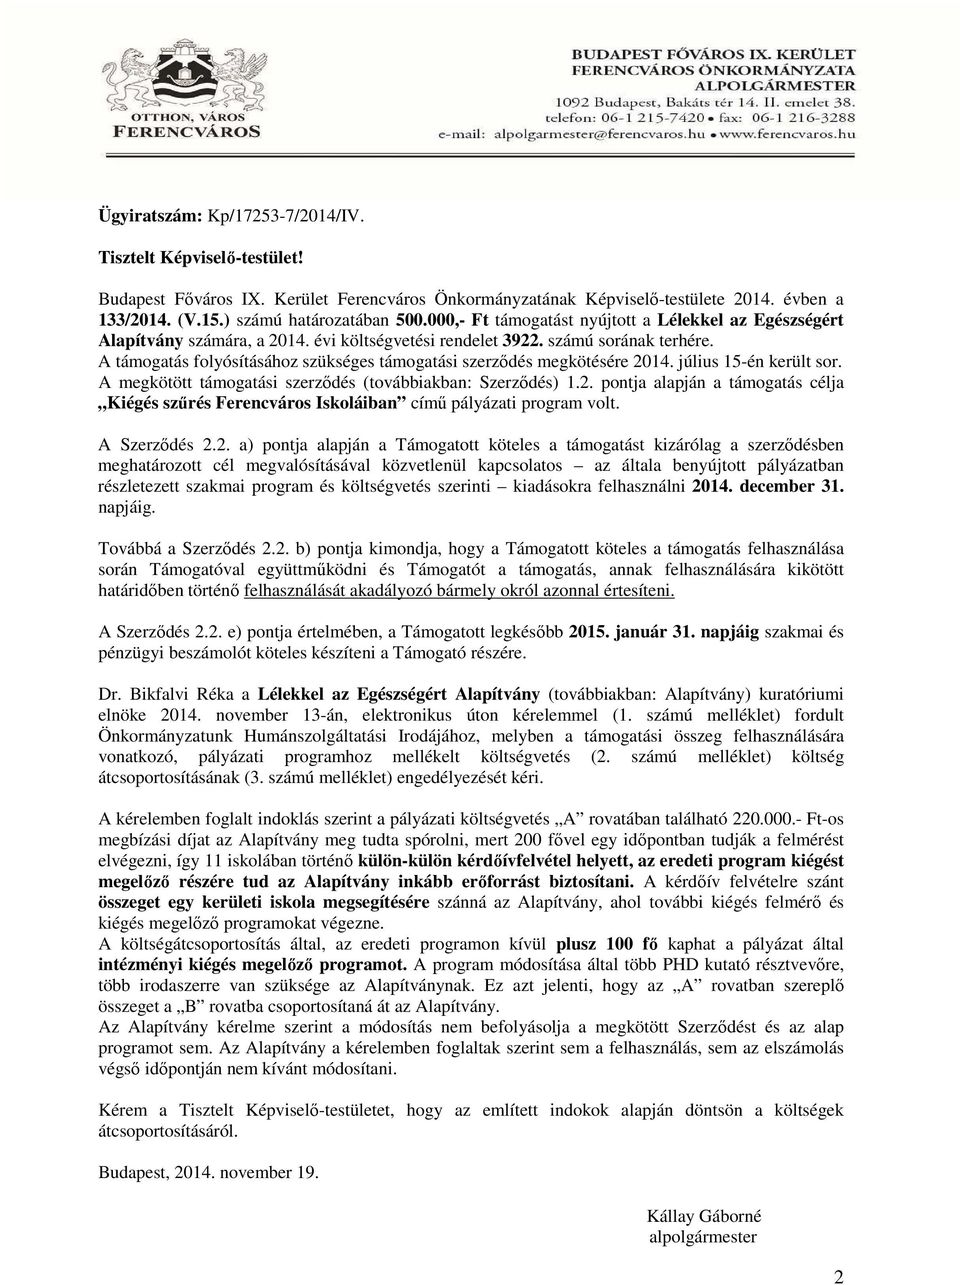 A támogatás folyósításához szükséges támogatási szerződés megkötésére 2014. július 15-én került sor. A megkötött támogatási szerződés (továbbiakban: Szerződés) 1.2. pontja alapján a támogatás célja Kiégés szűrés Ferencváros Iskoláiban című pályázati program volt.